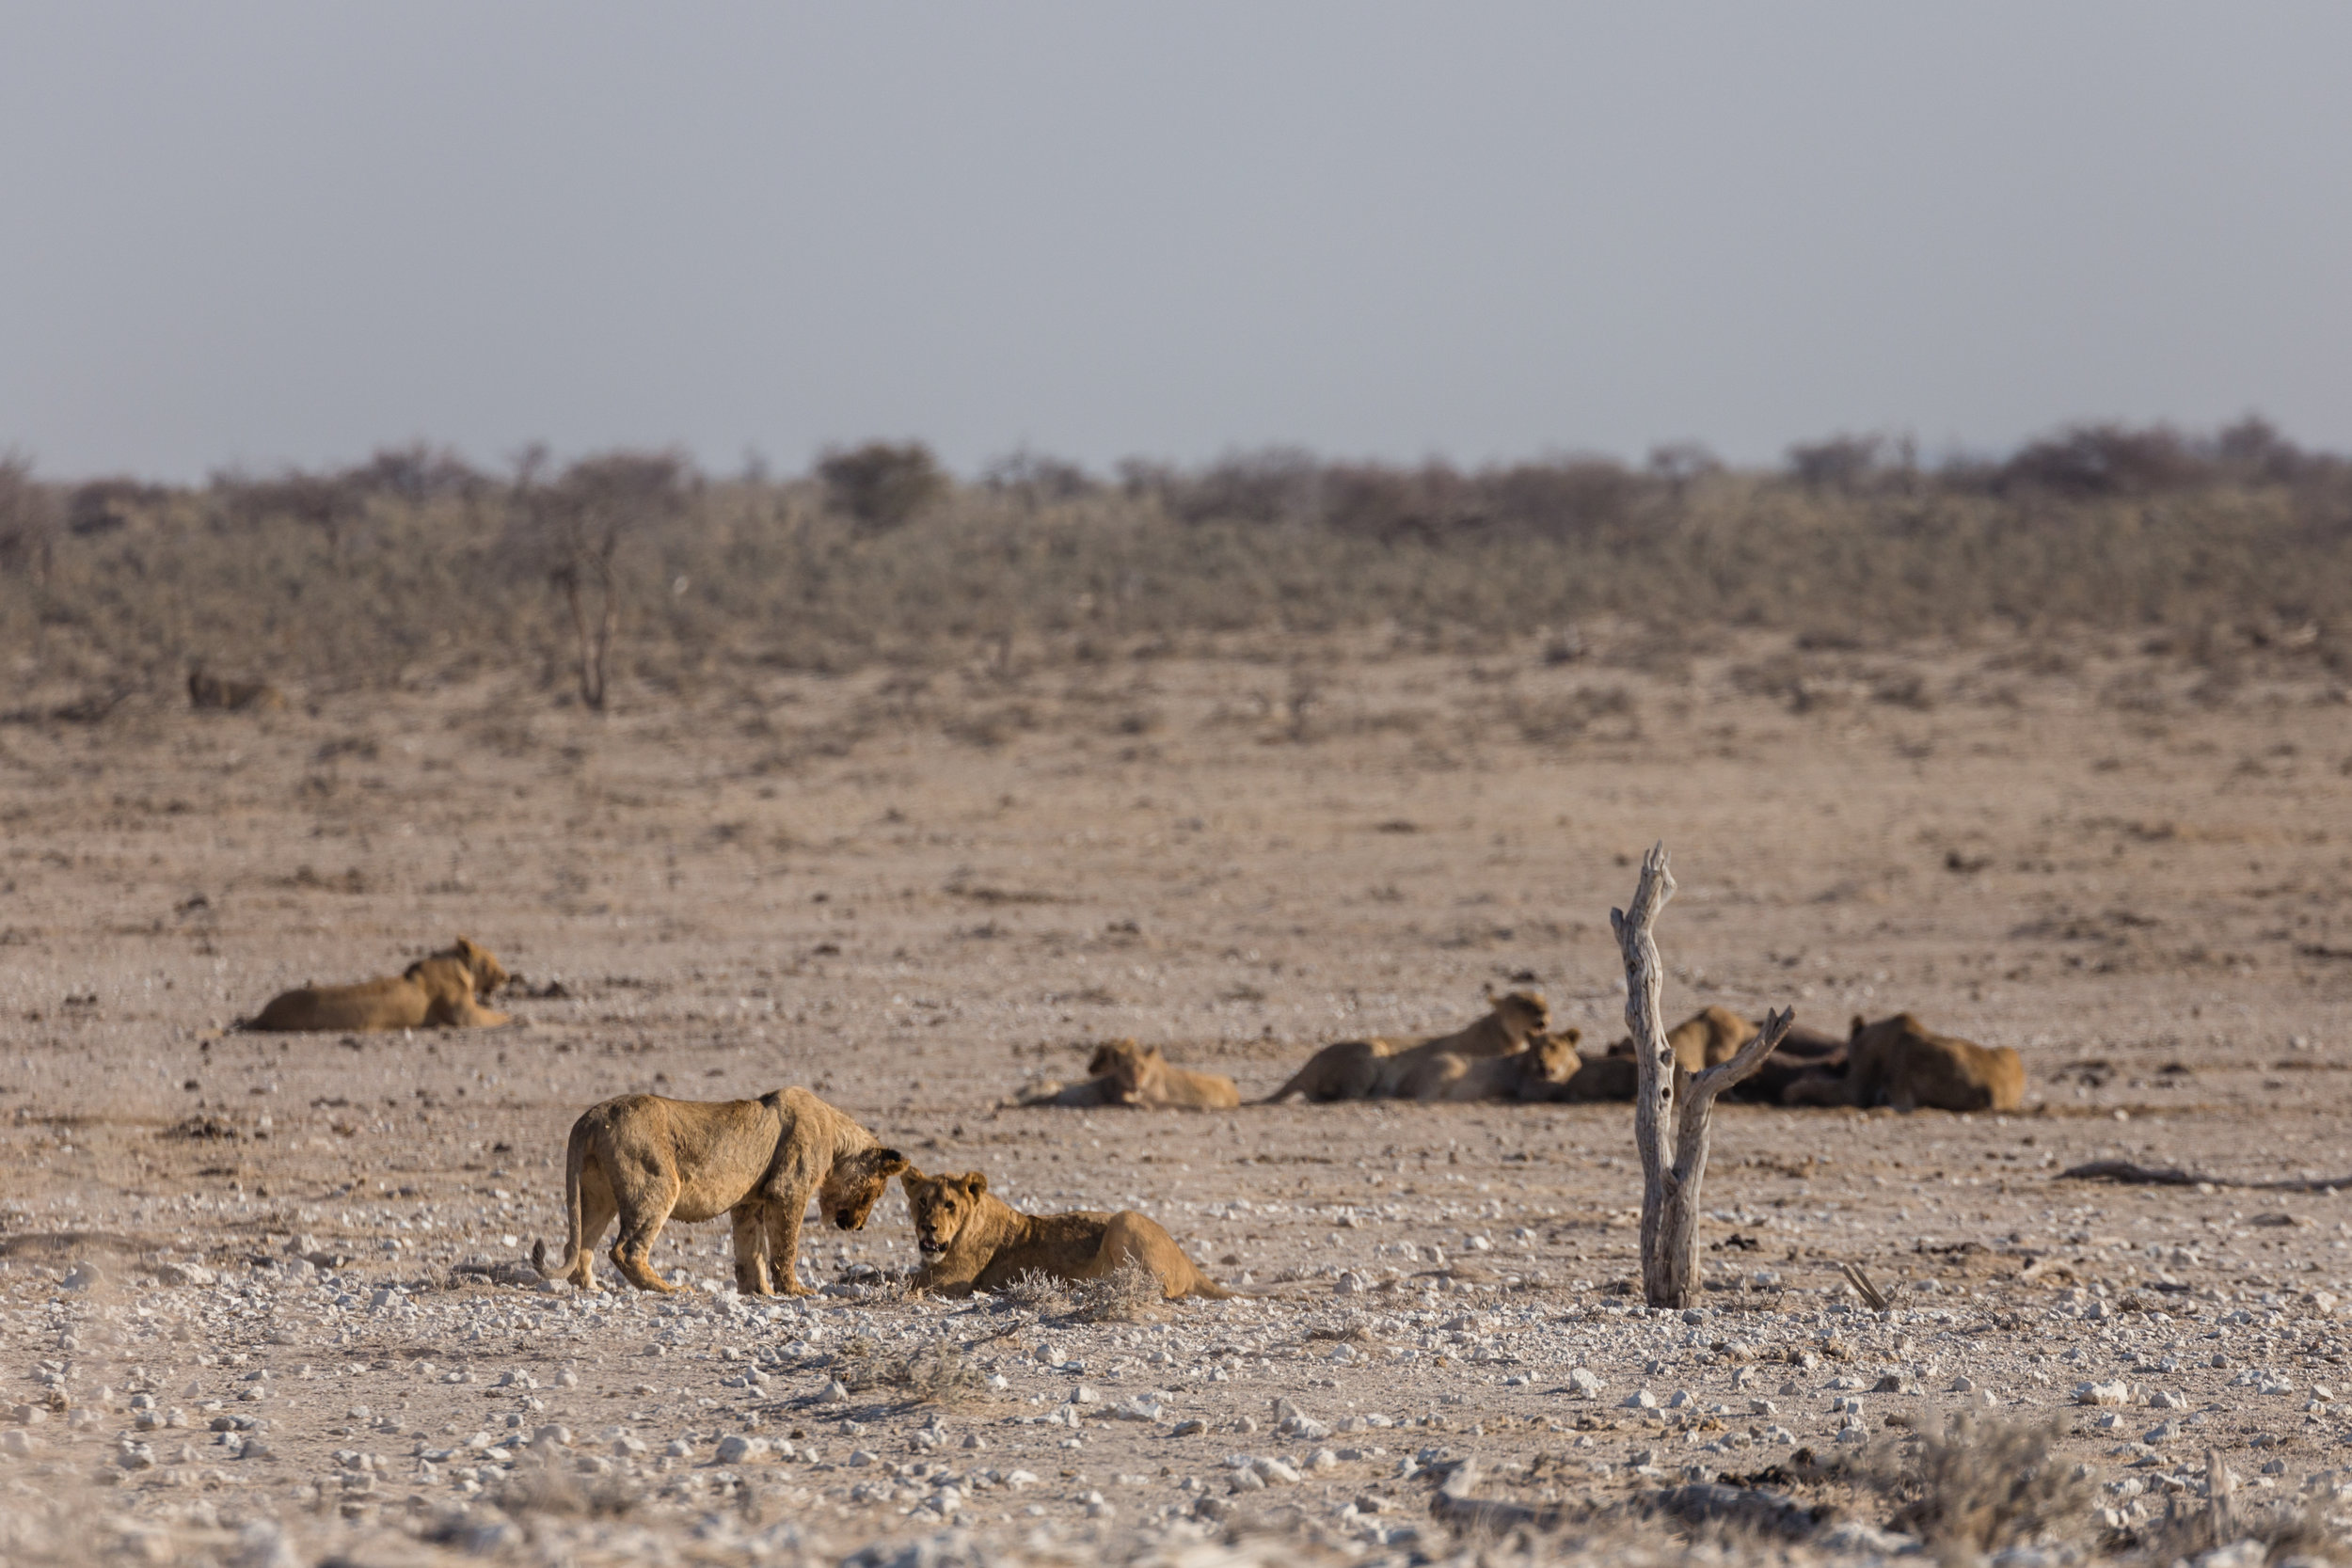 Lion' Around. Etosha, Namibia (Aug. 2019)